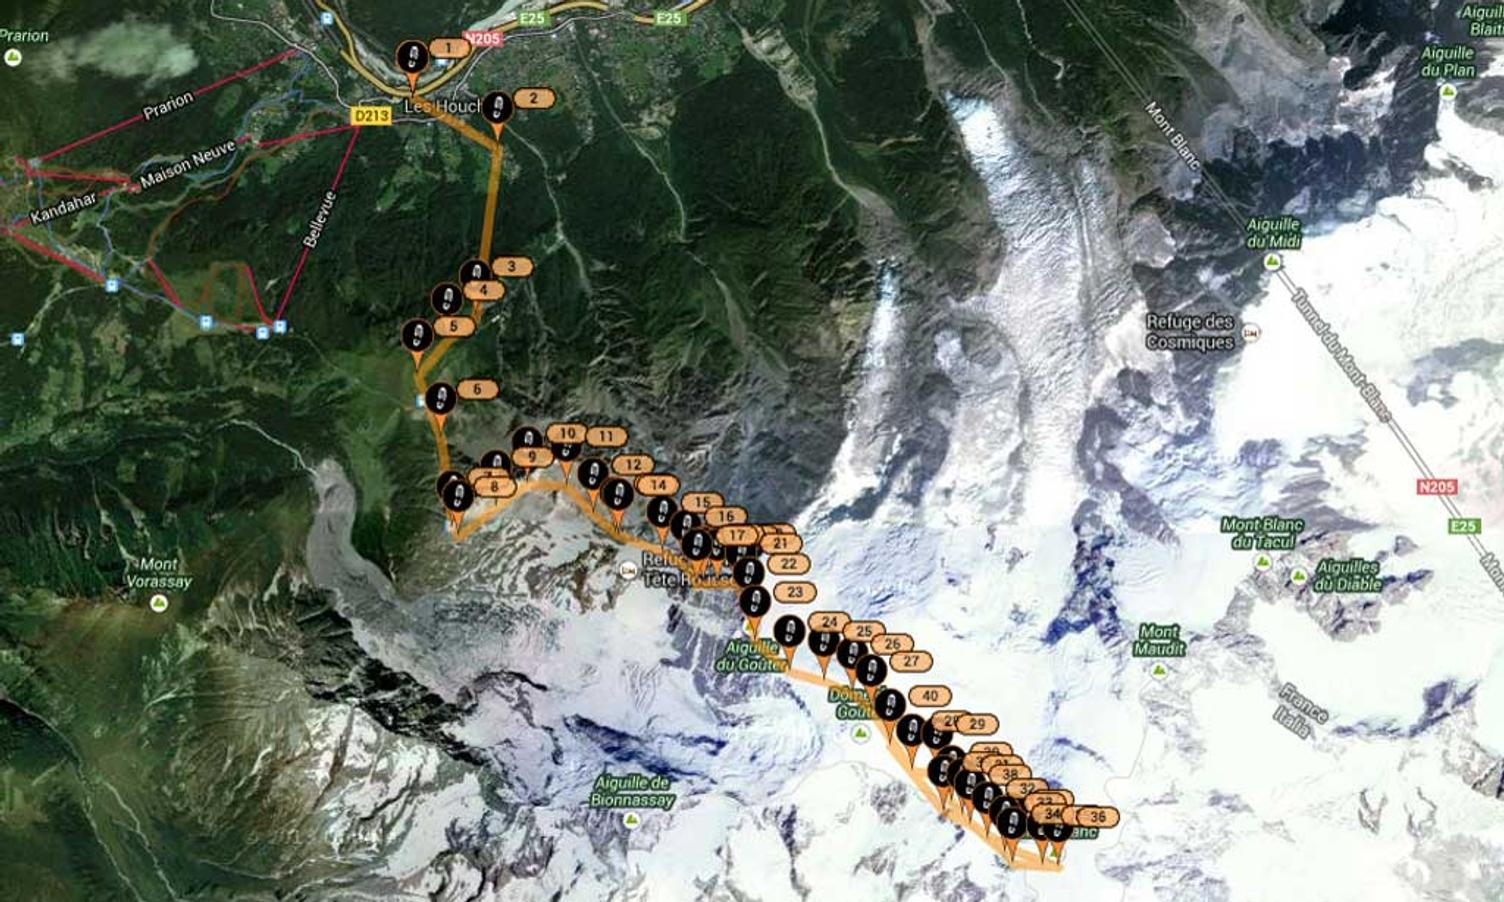 Turen starta i Les Houches ved Chamonix, 1000 moh. (Google Map/findmespot.com)